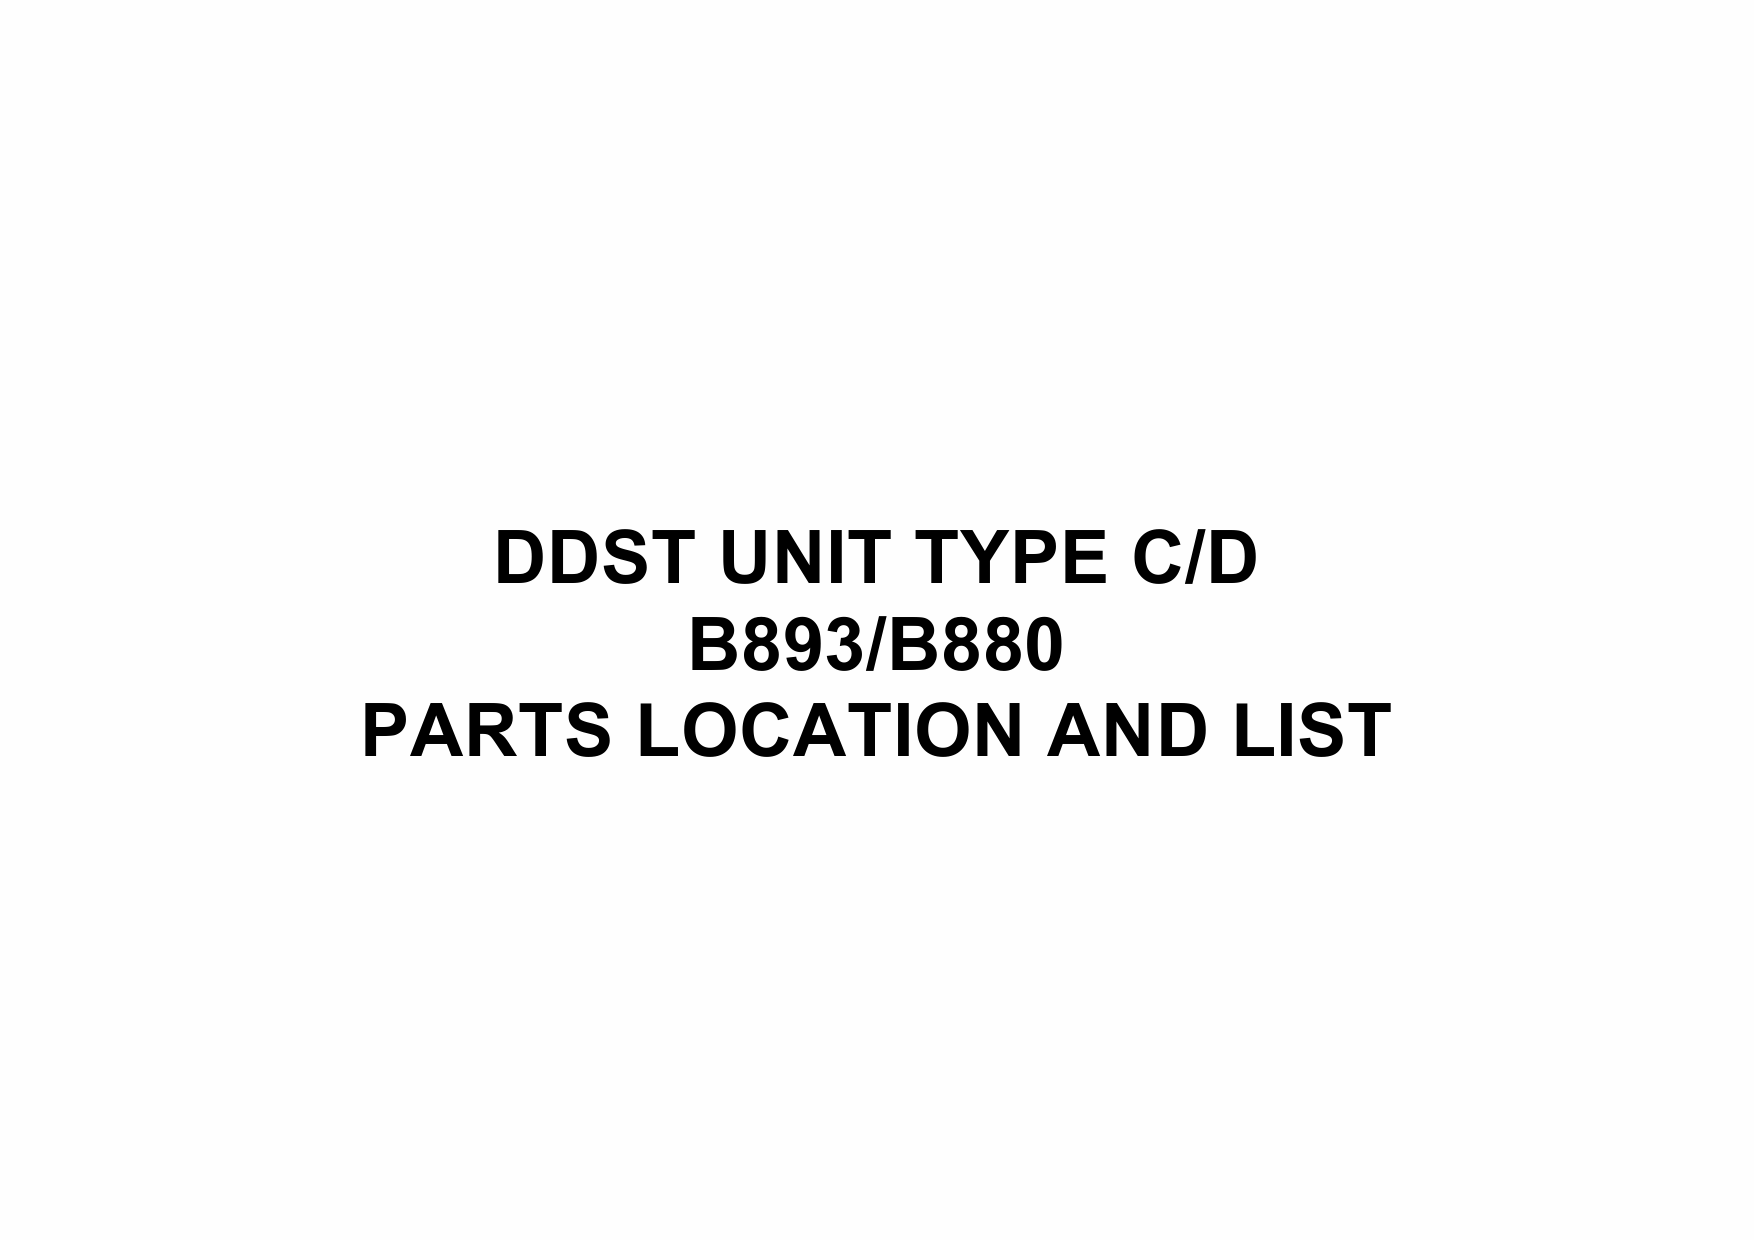 RICOH Options B839 B880 DDST-UNIT-TYPE-C-D Parts Catalog PDF download-1